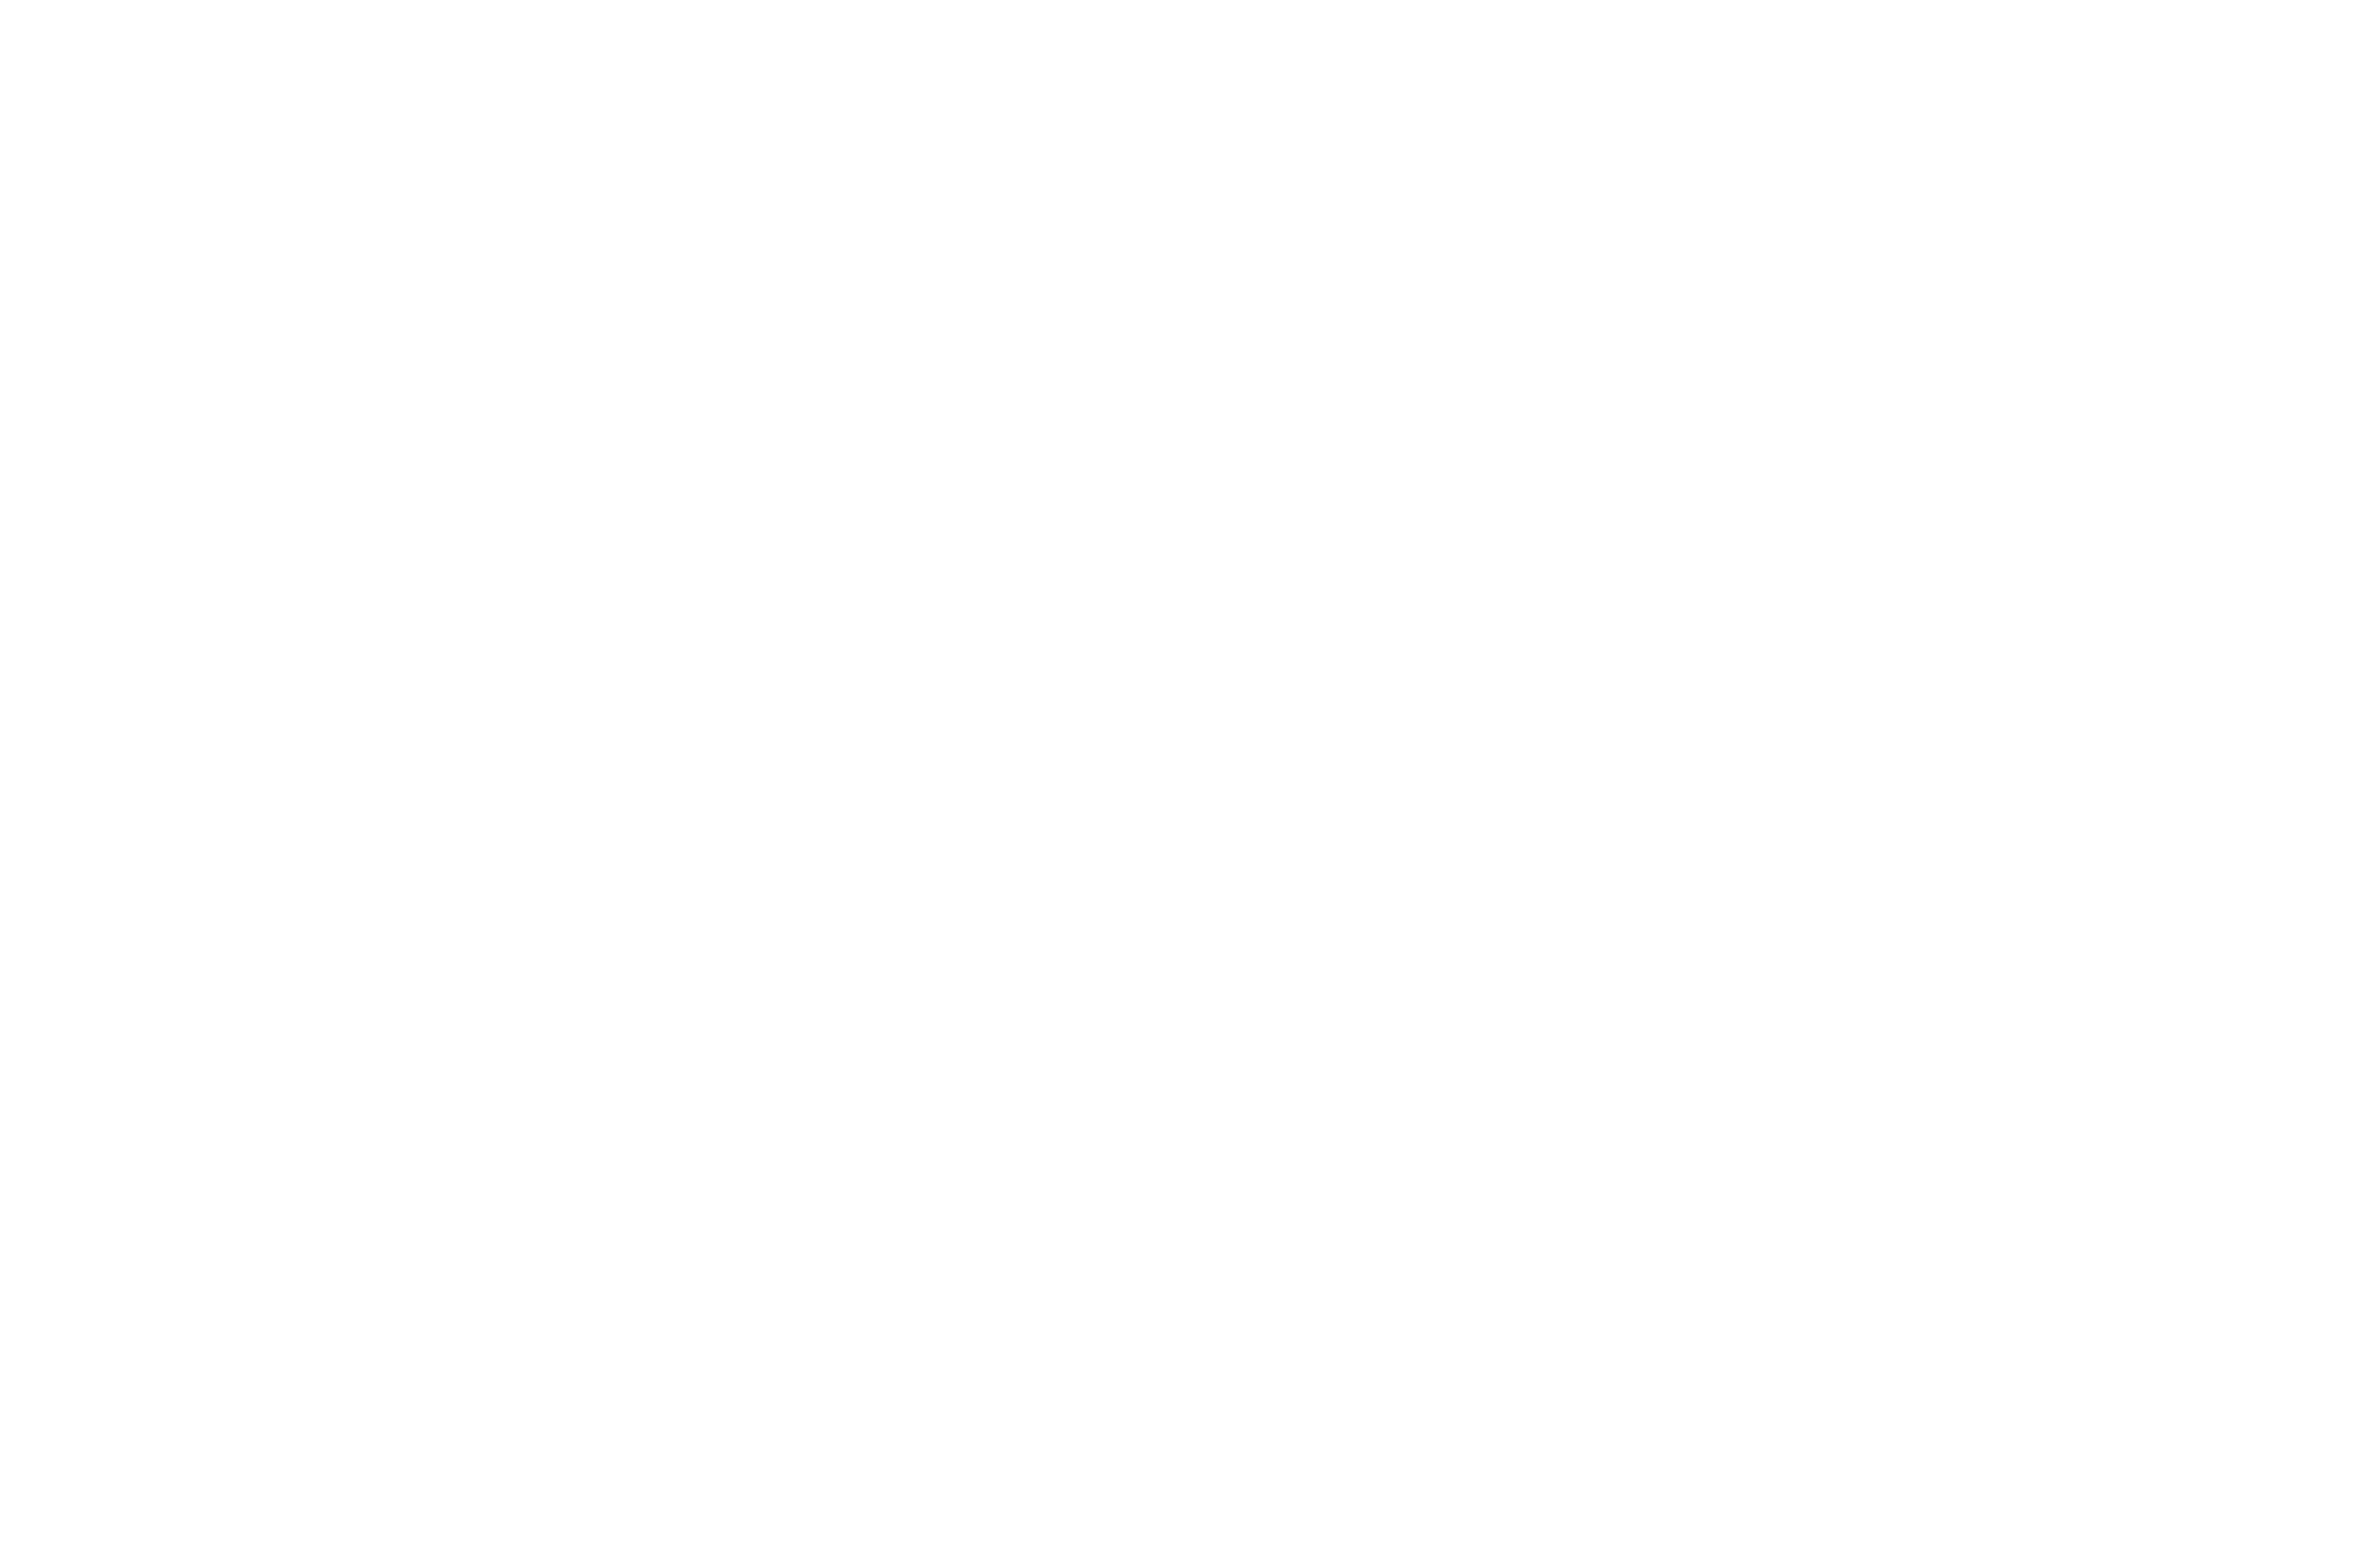 OFFICIALSELECTION-PhoenixMonthlyShortFilmFestival-August2020 White on Black.png